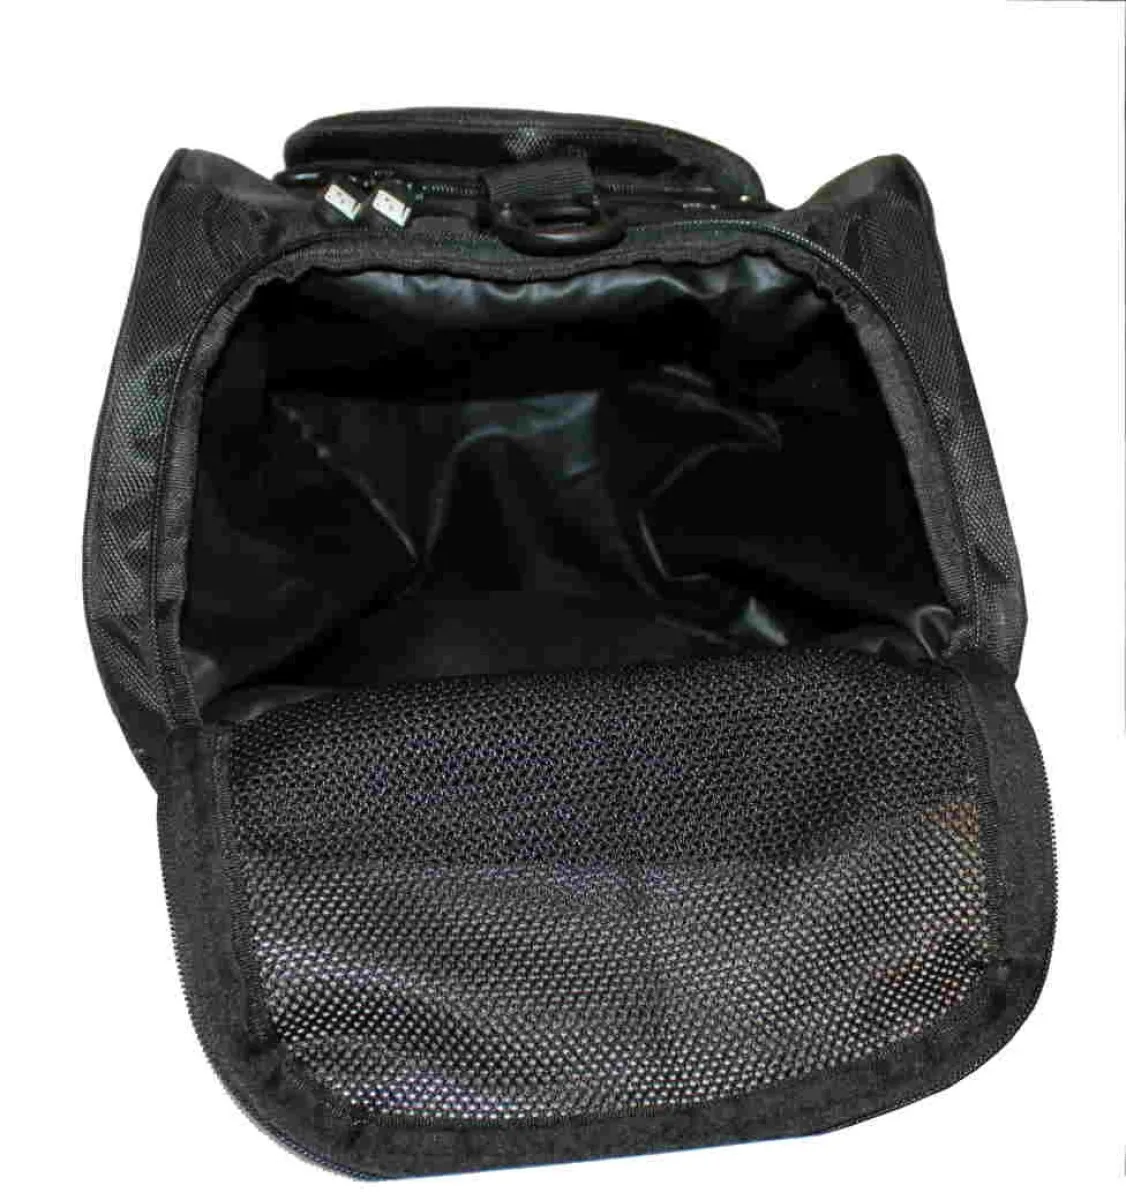 Sac de sport avec fonction sac à dos en noir avec empiècements latéraux bleus